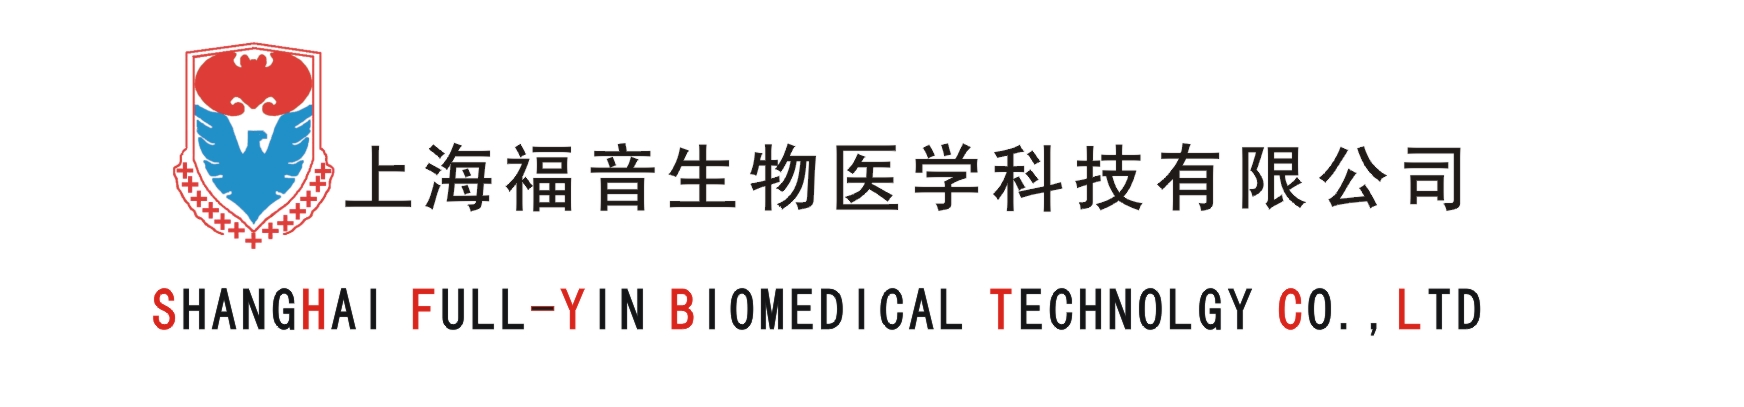 上海福音生物醫學科技有限公司